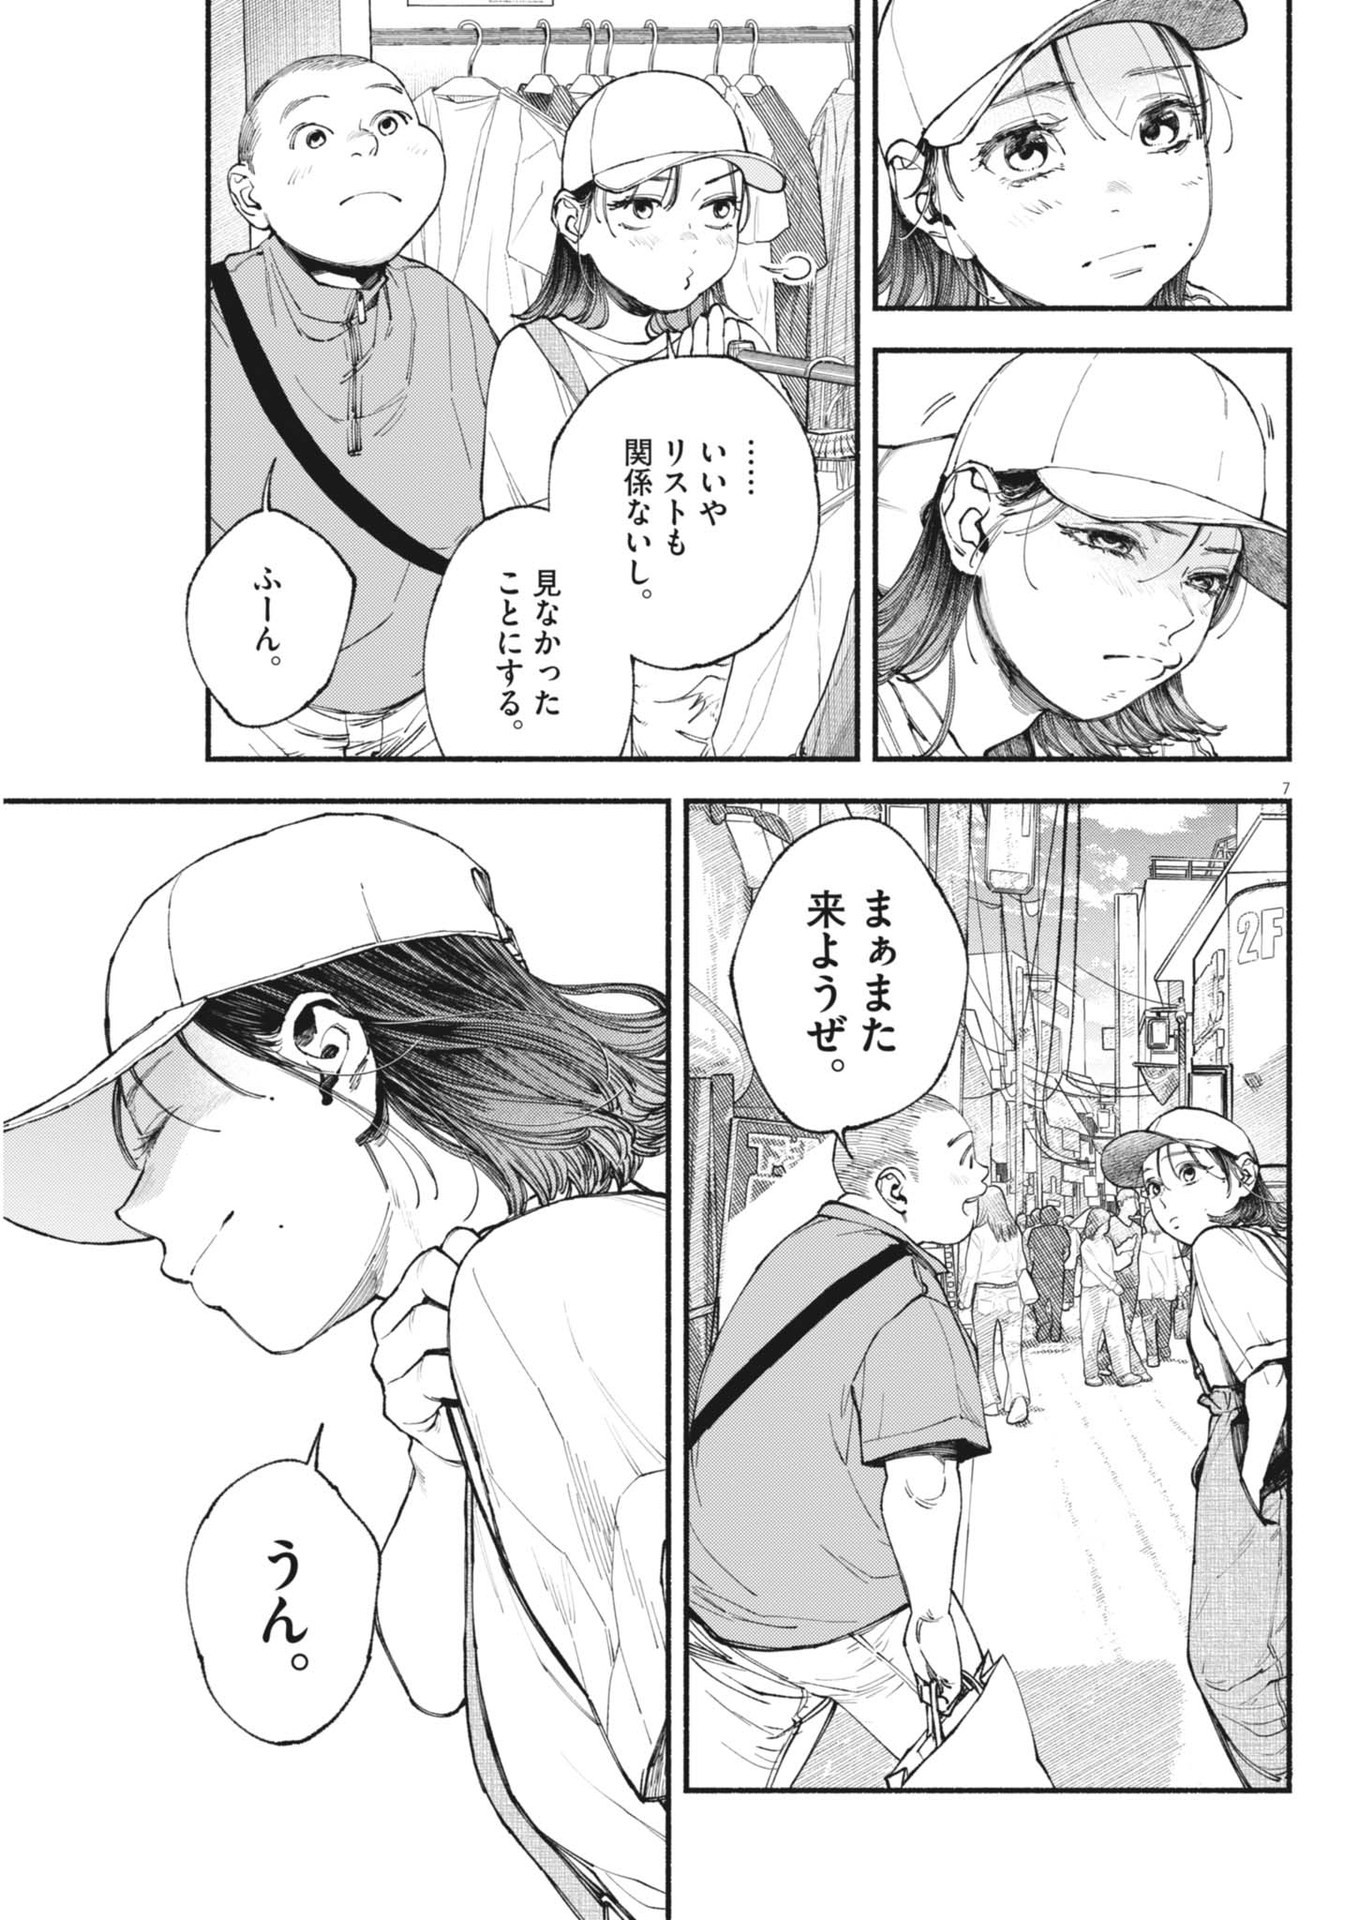 Konoyo wa Tatakau Kachi ga Aru  - Chapter 27 - Page 7